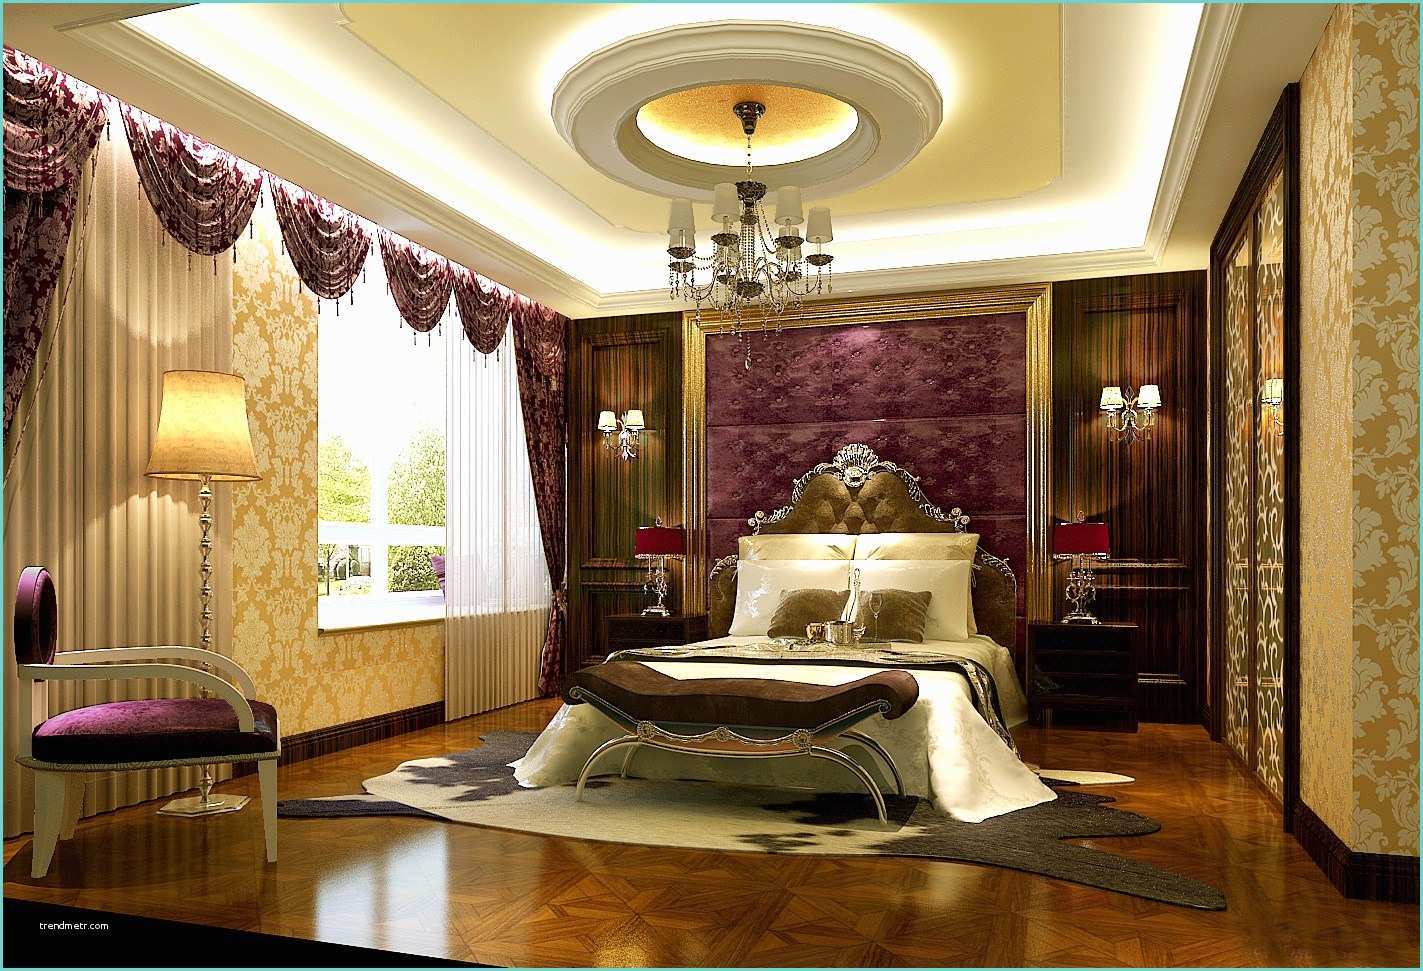 Pop Design Ceiling Image 25 Latest False Designs for Living Room & Bed Room